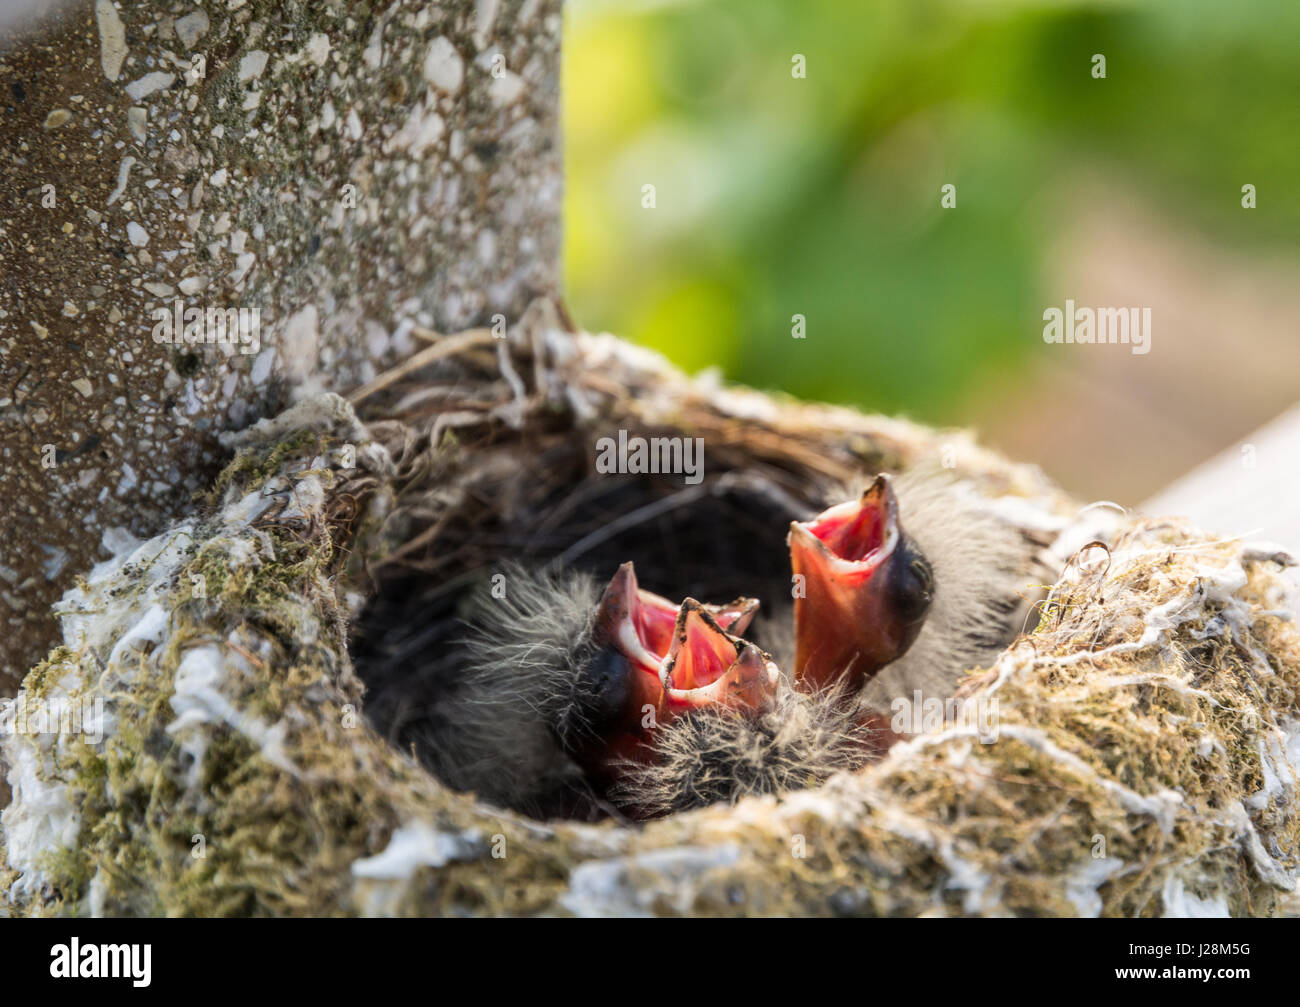 Tardus merula pájaros en el nido en un árbol. Mirlo común con nido de pájaros jóvenes Foto de stock